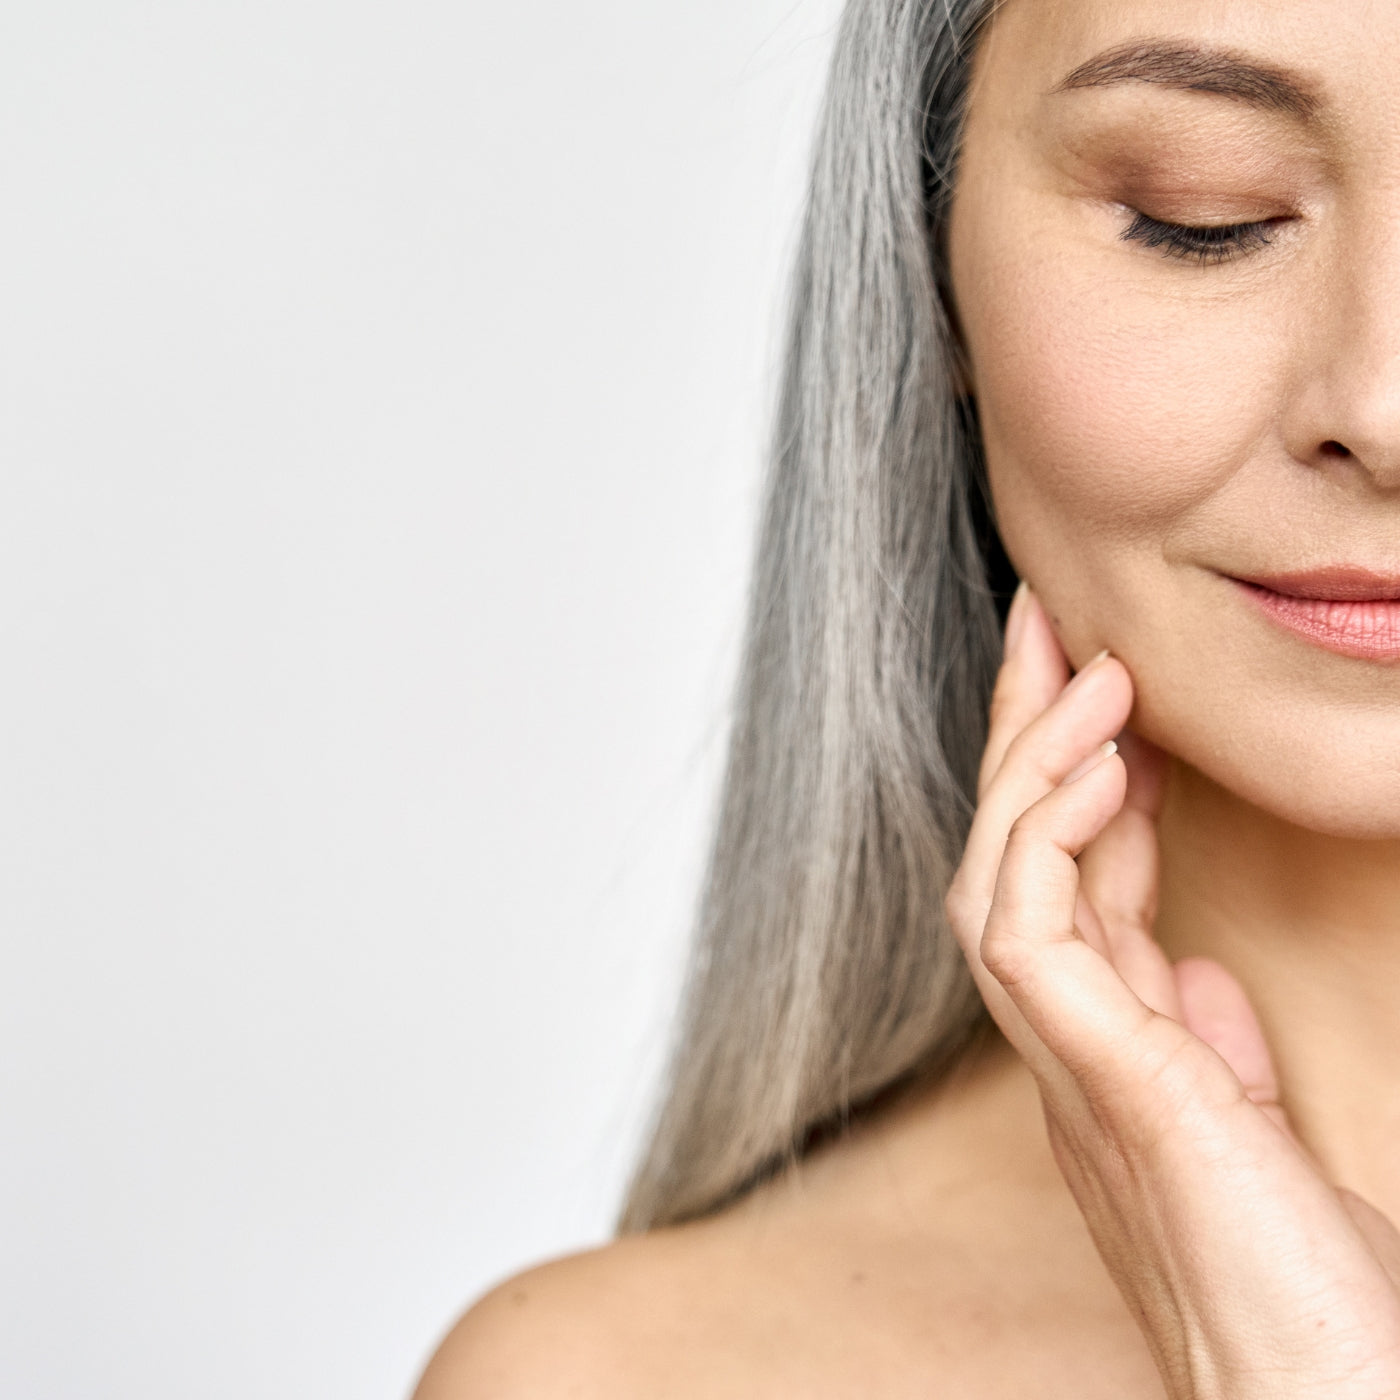 Skincare tips for menopausal skin